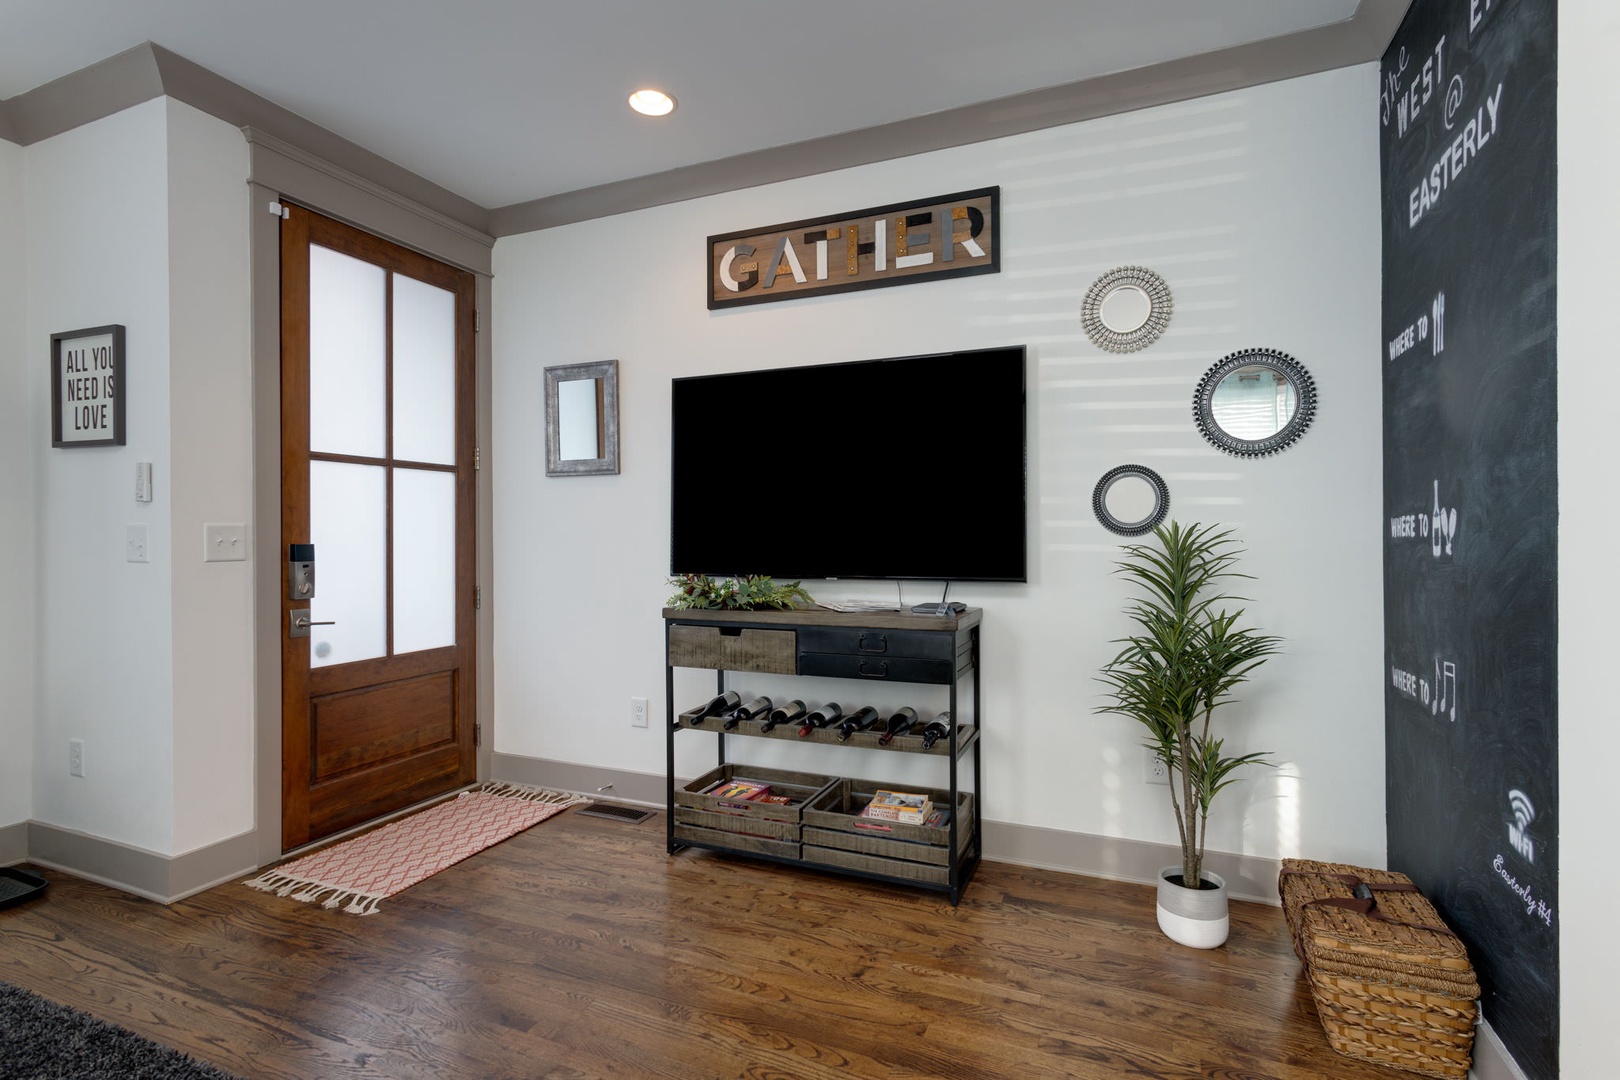 Smart TV in living room